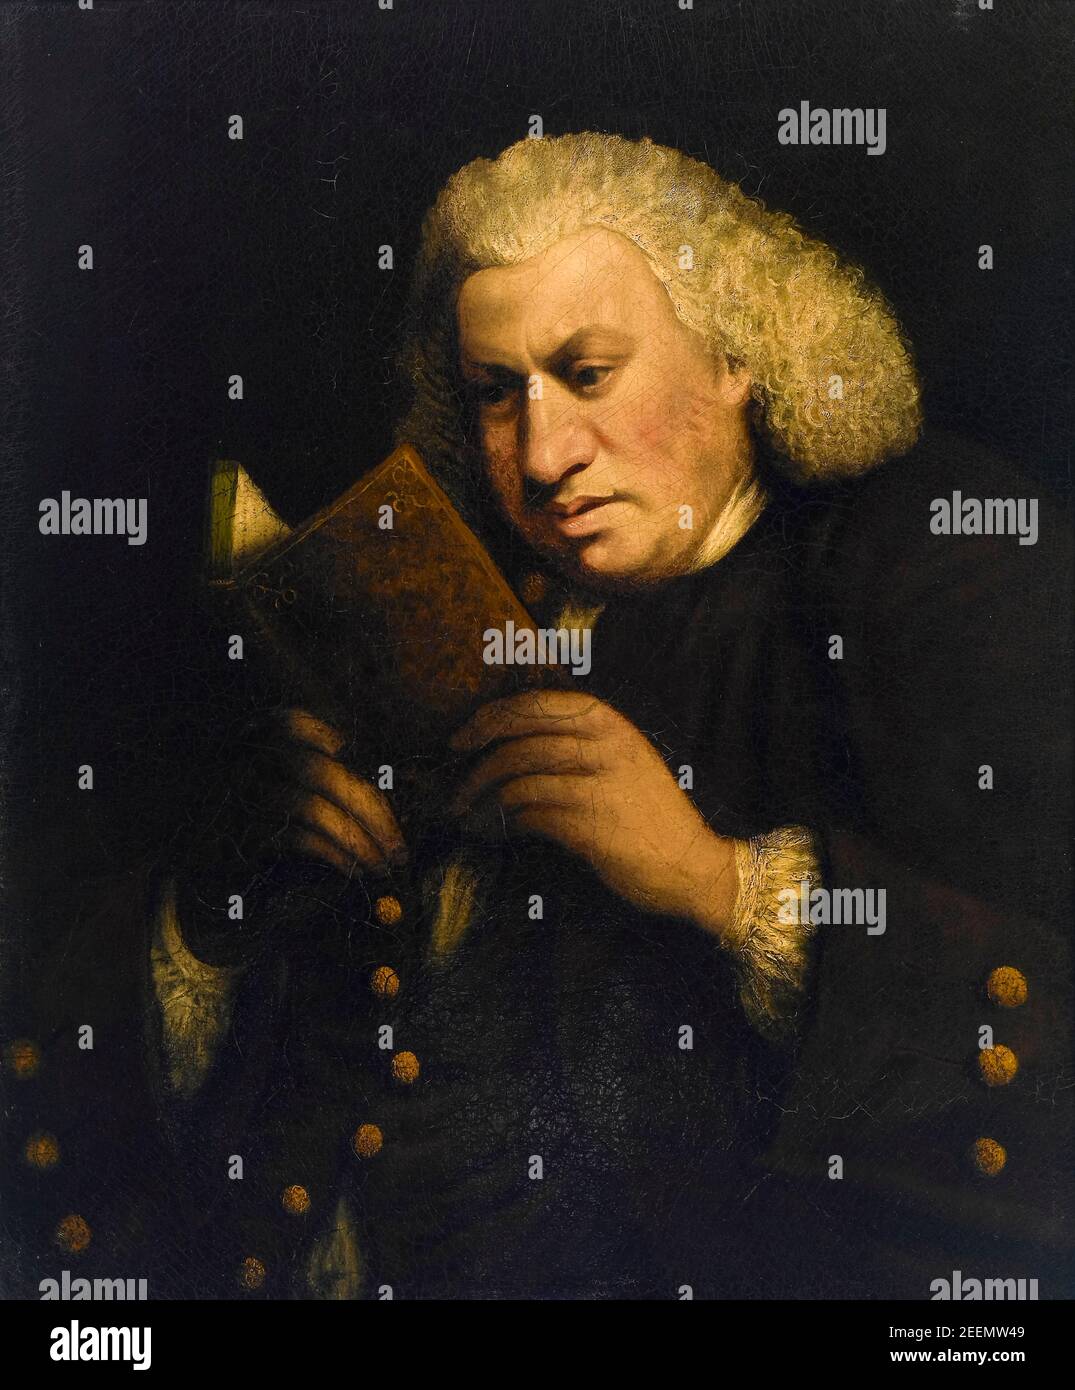 Dr Samuel Johnson (1709-1784), écrivain anglais, a publié « A Dictionary of the English Language » en 1755, portrait painting by Frances Reynolds, 1783 Banque D'Images